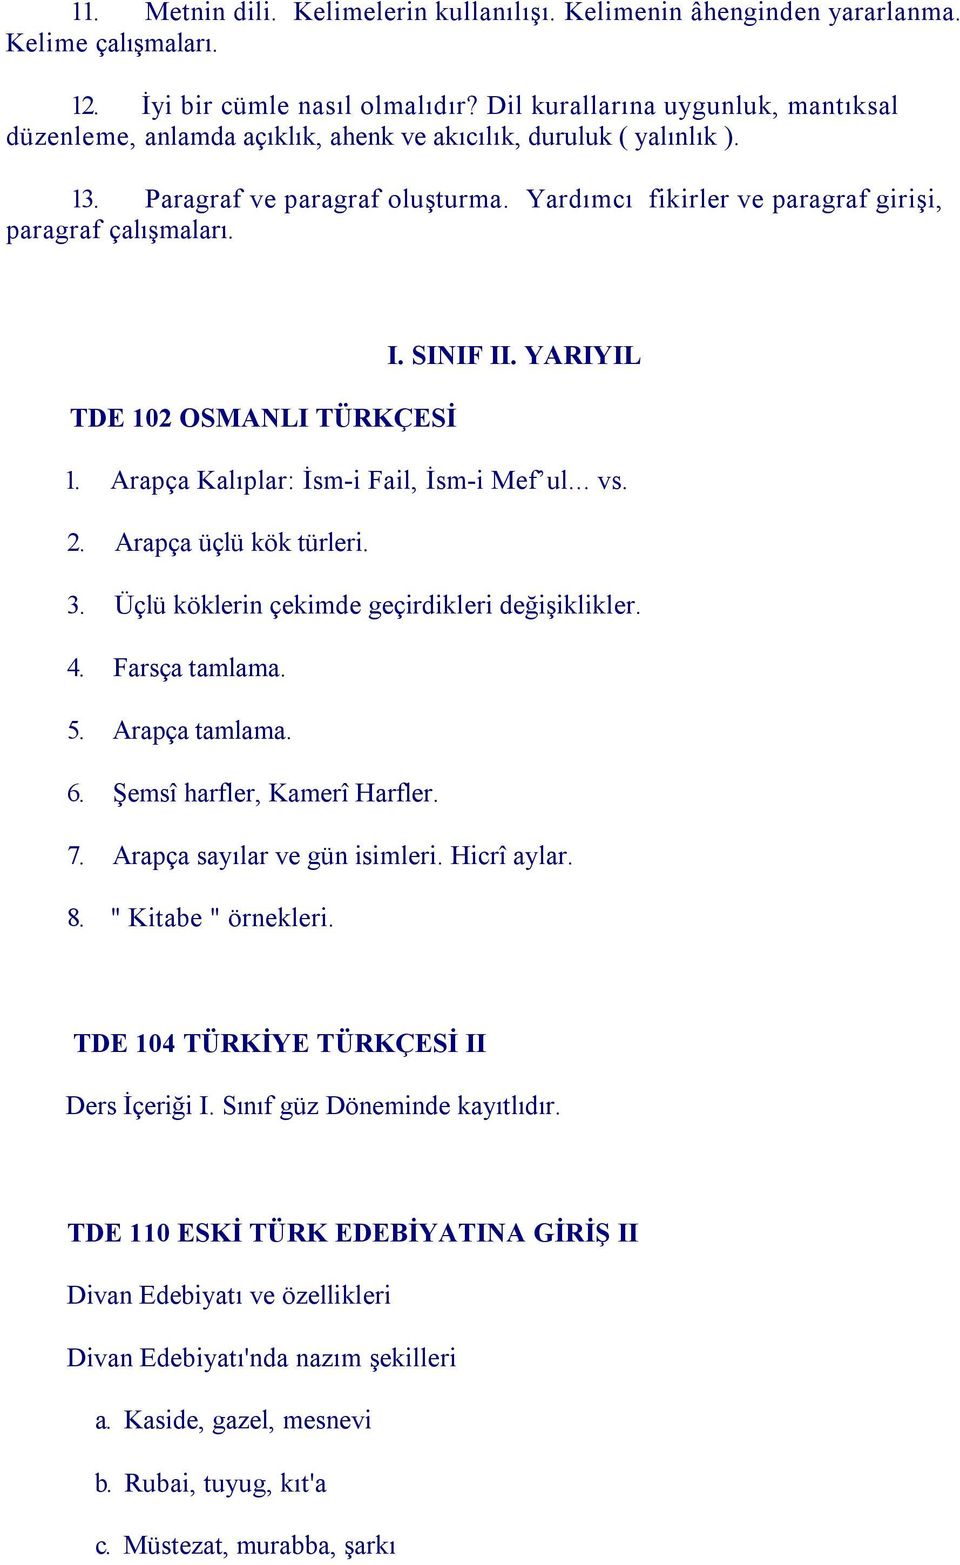 I. SINIF II. YARIYIL TDE 102 OSMANLI TÜRKÇESİ 1. Arapça Kalıplar: İsm-i Fail, İsm-i Mef ul... vs. 2. Arapça üçlü kök türleri. 3. Üçlü köklerin çekimde geçirdikleri değişiklikler. 4. Farsça tamlama. 5.